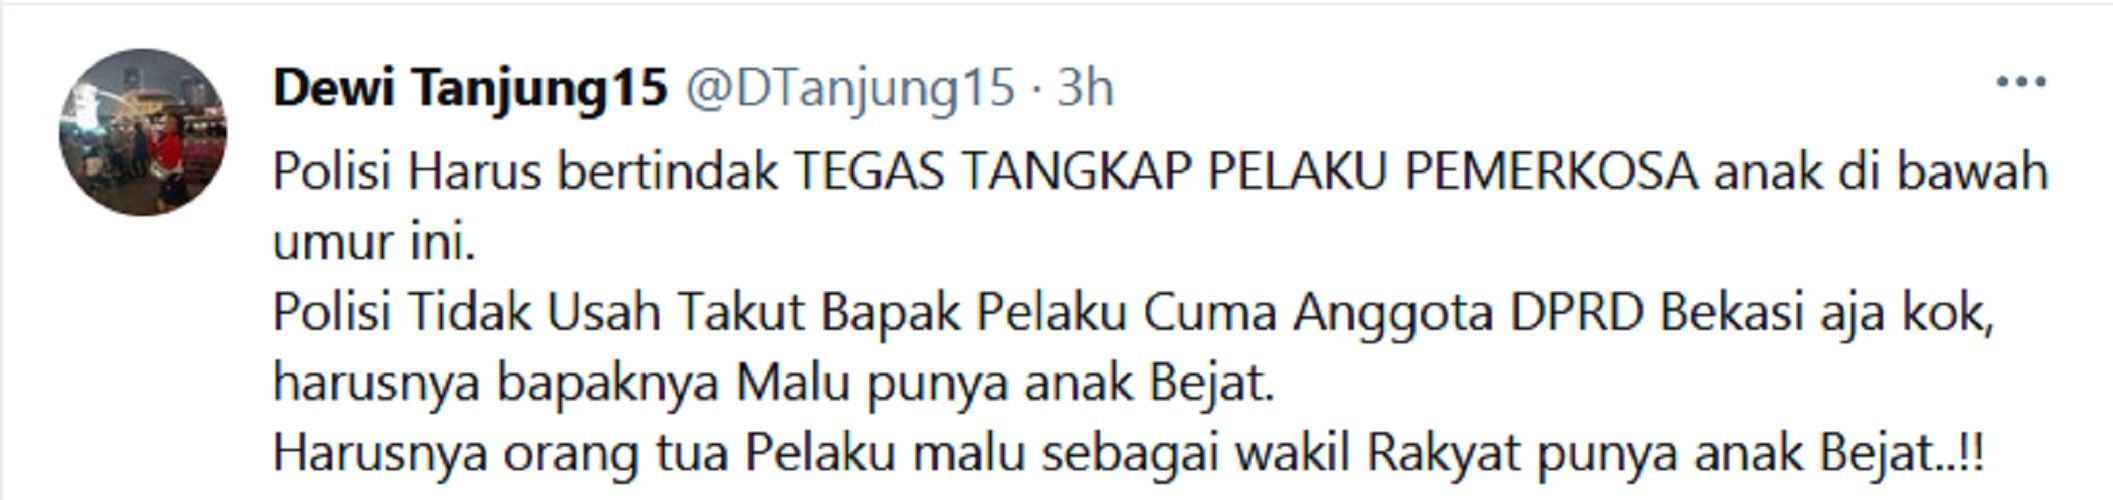 Viral Anak Anggota DPRD Kota Bekasi Setubuhi ABG, Dewi Tanjung: Harusnya Bapaknya Malu Punya Anak Bejat